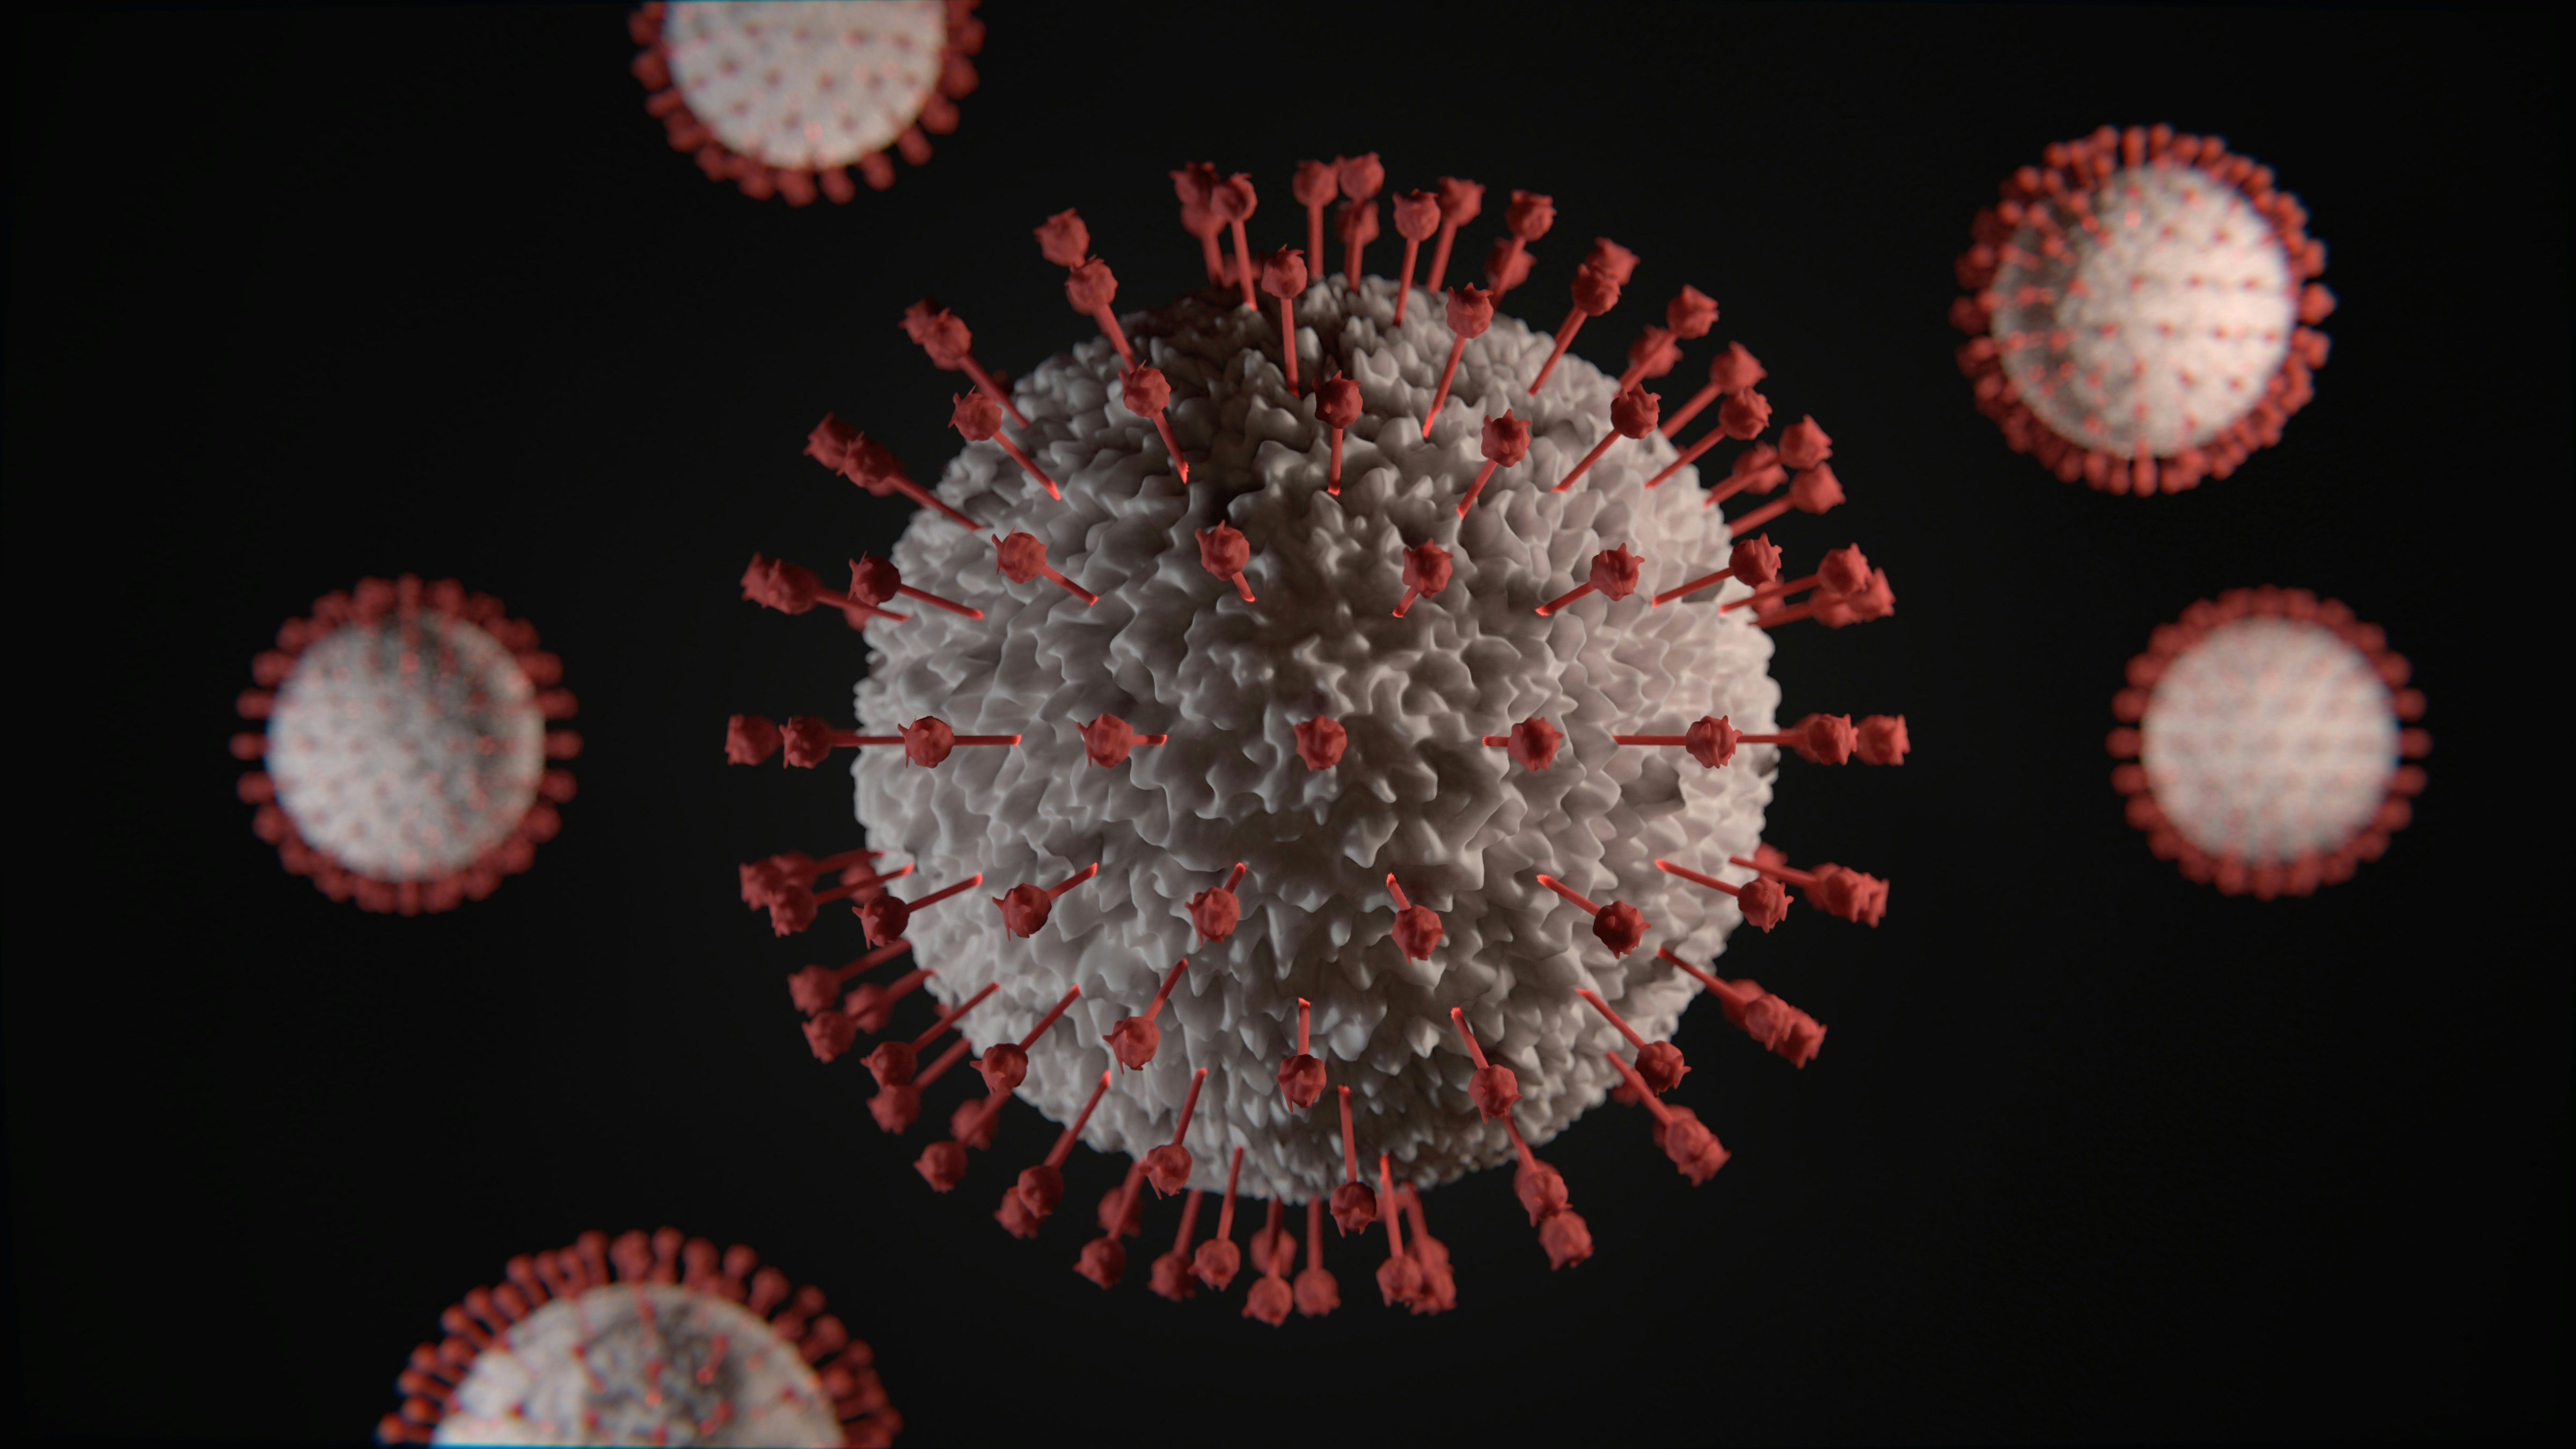 Monkeypox Virus - ने दी दस्तक, जमायें अपने कदम